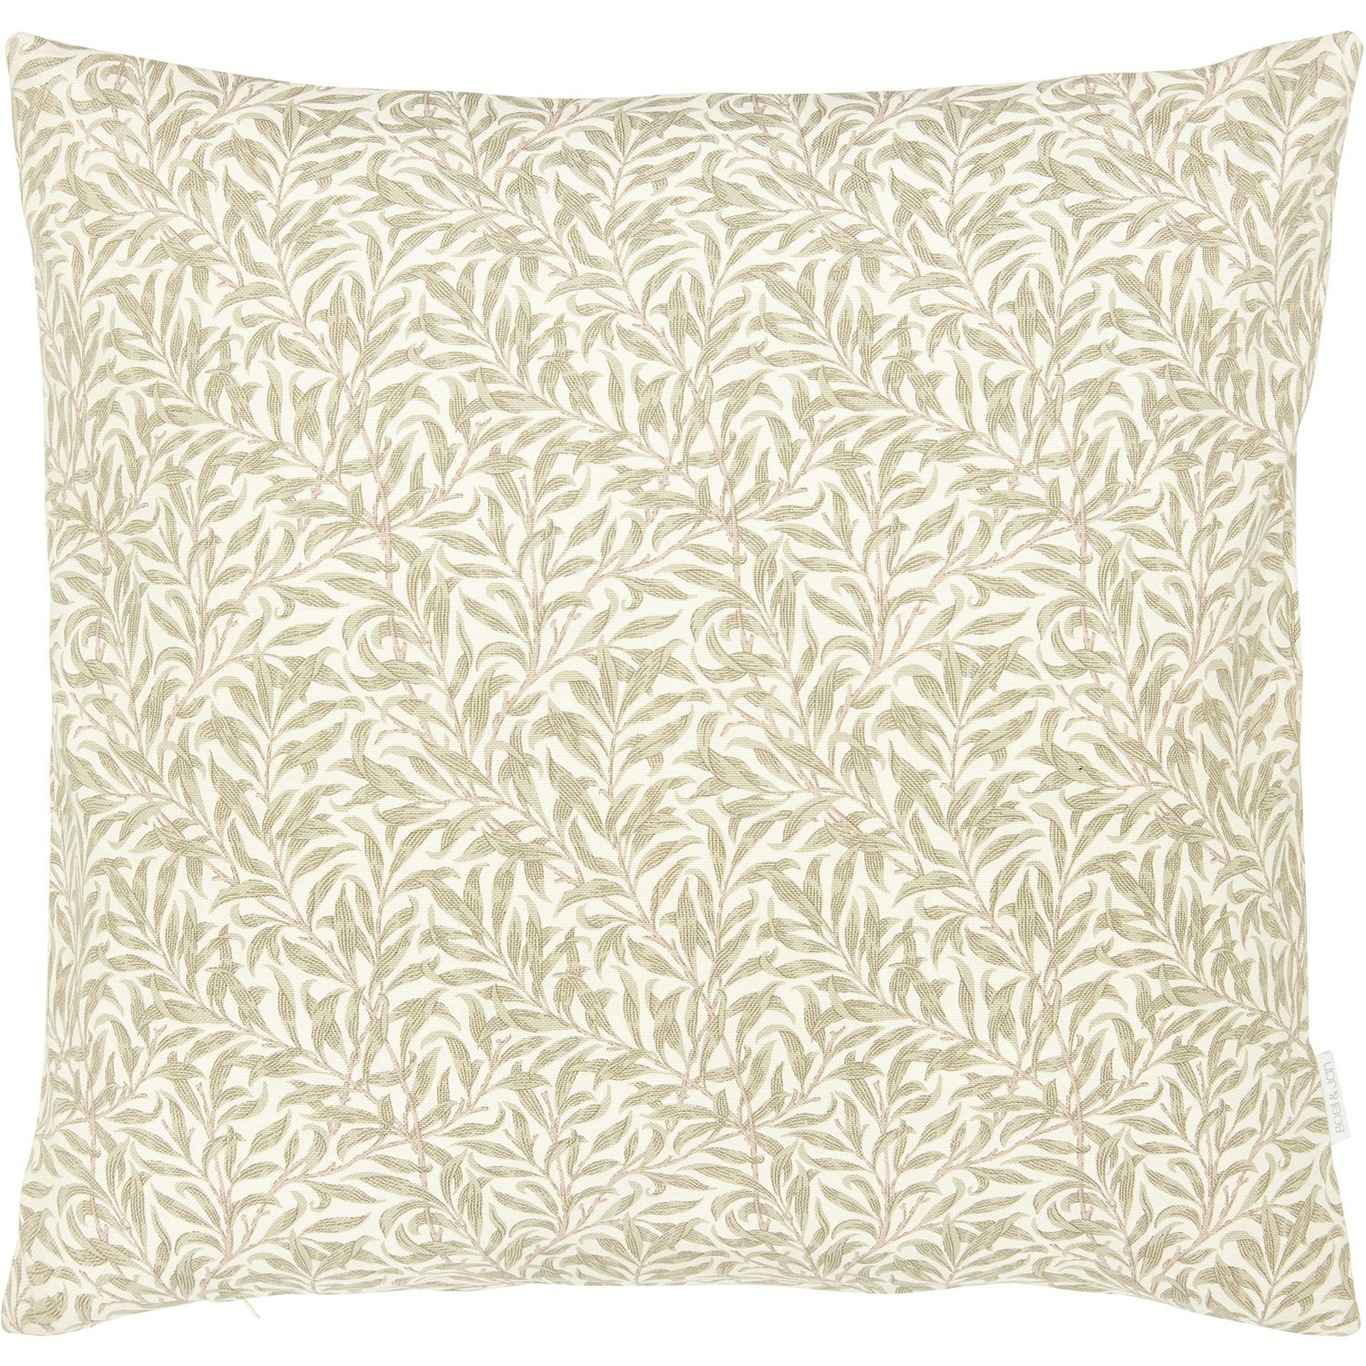 Ramas Cushion Cover 50x50 cm, Beige/White